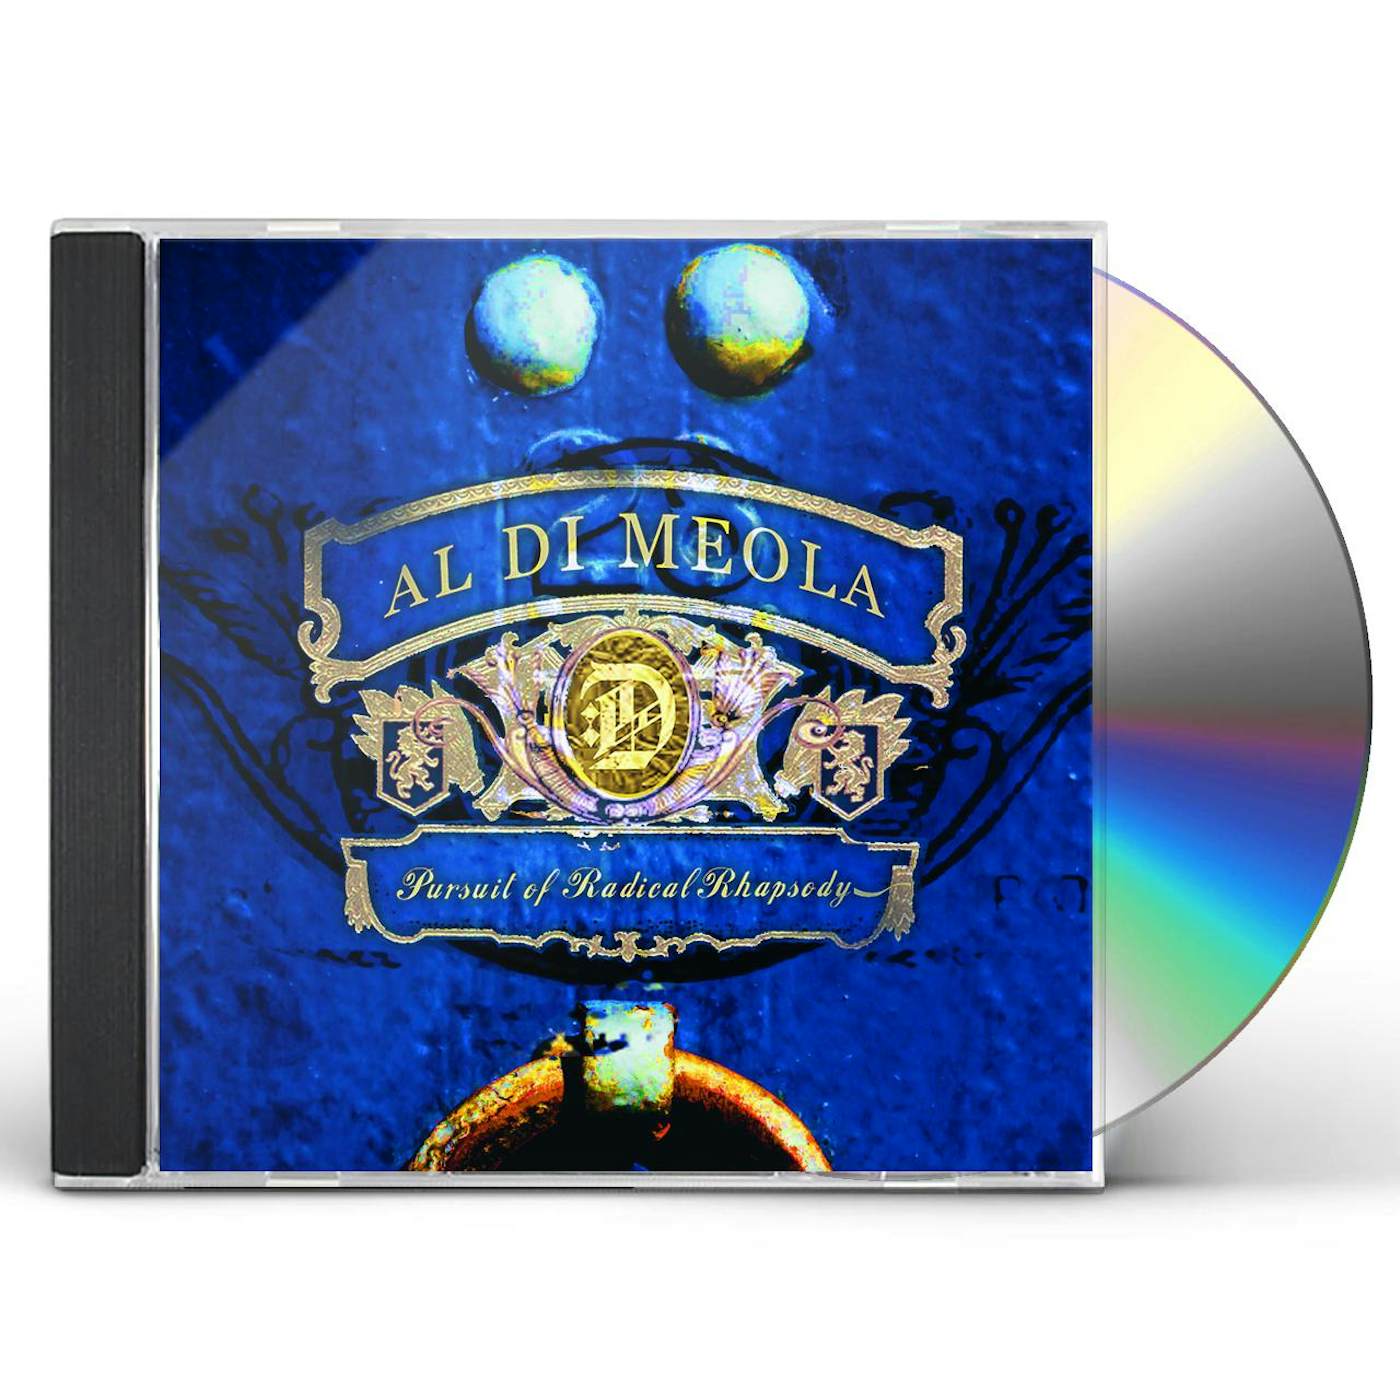 Al Di Meola PURSUIT OF RADICAL RHAPSODY CD